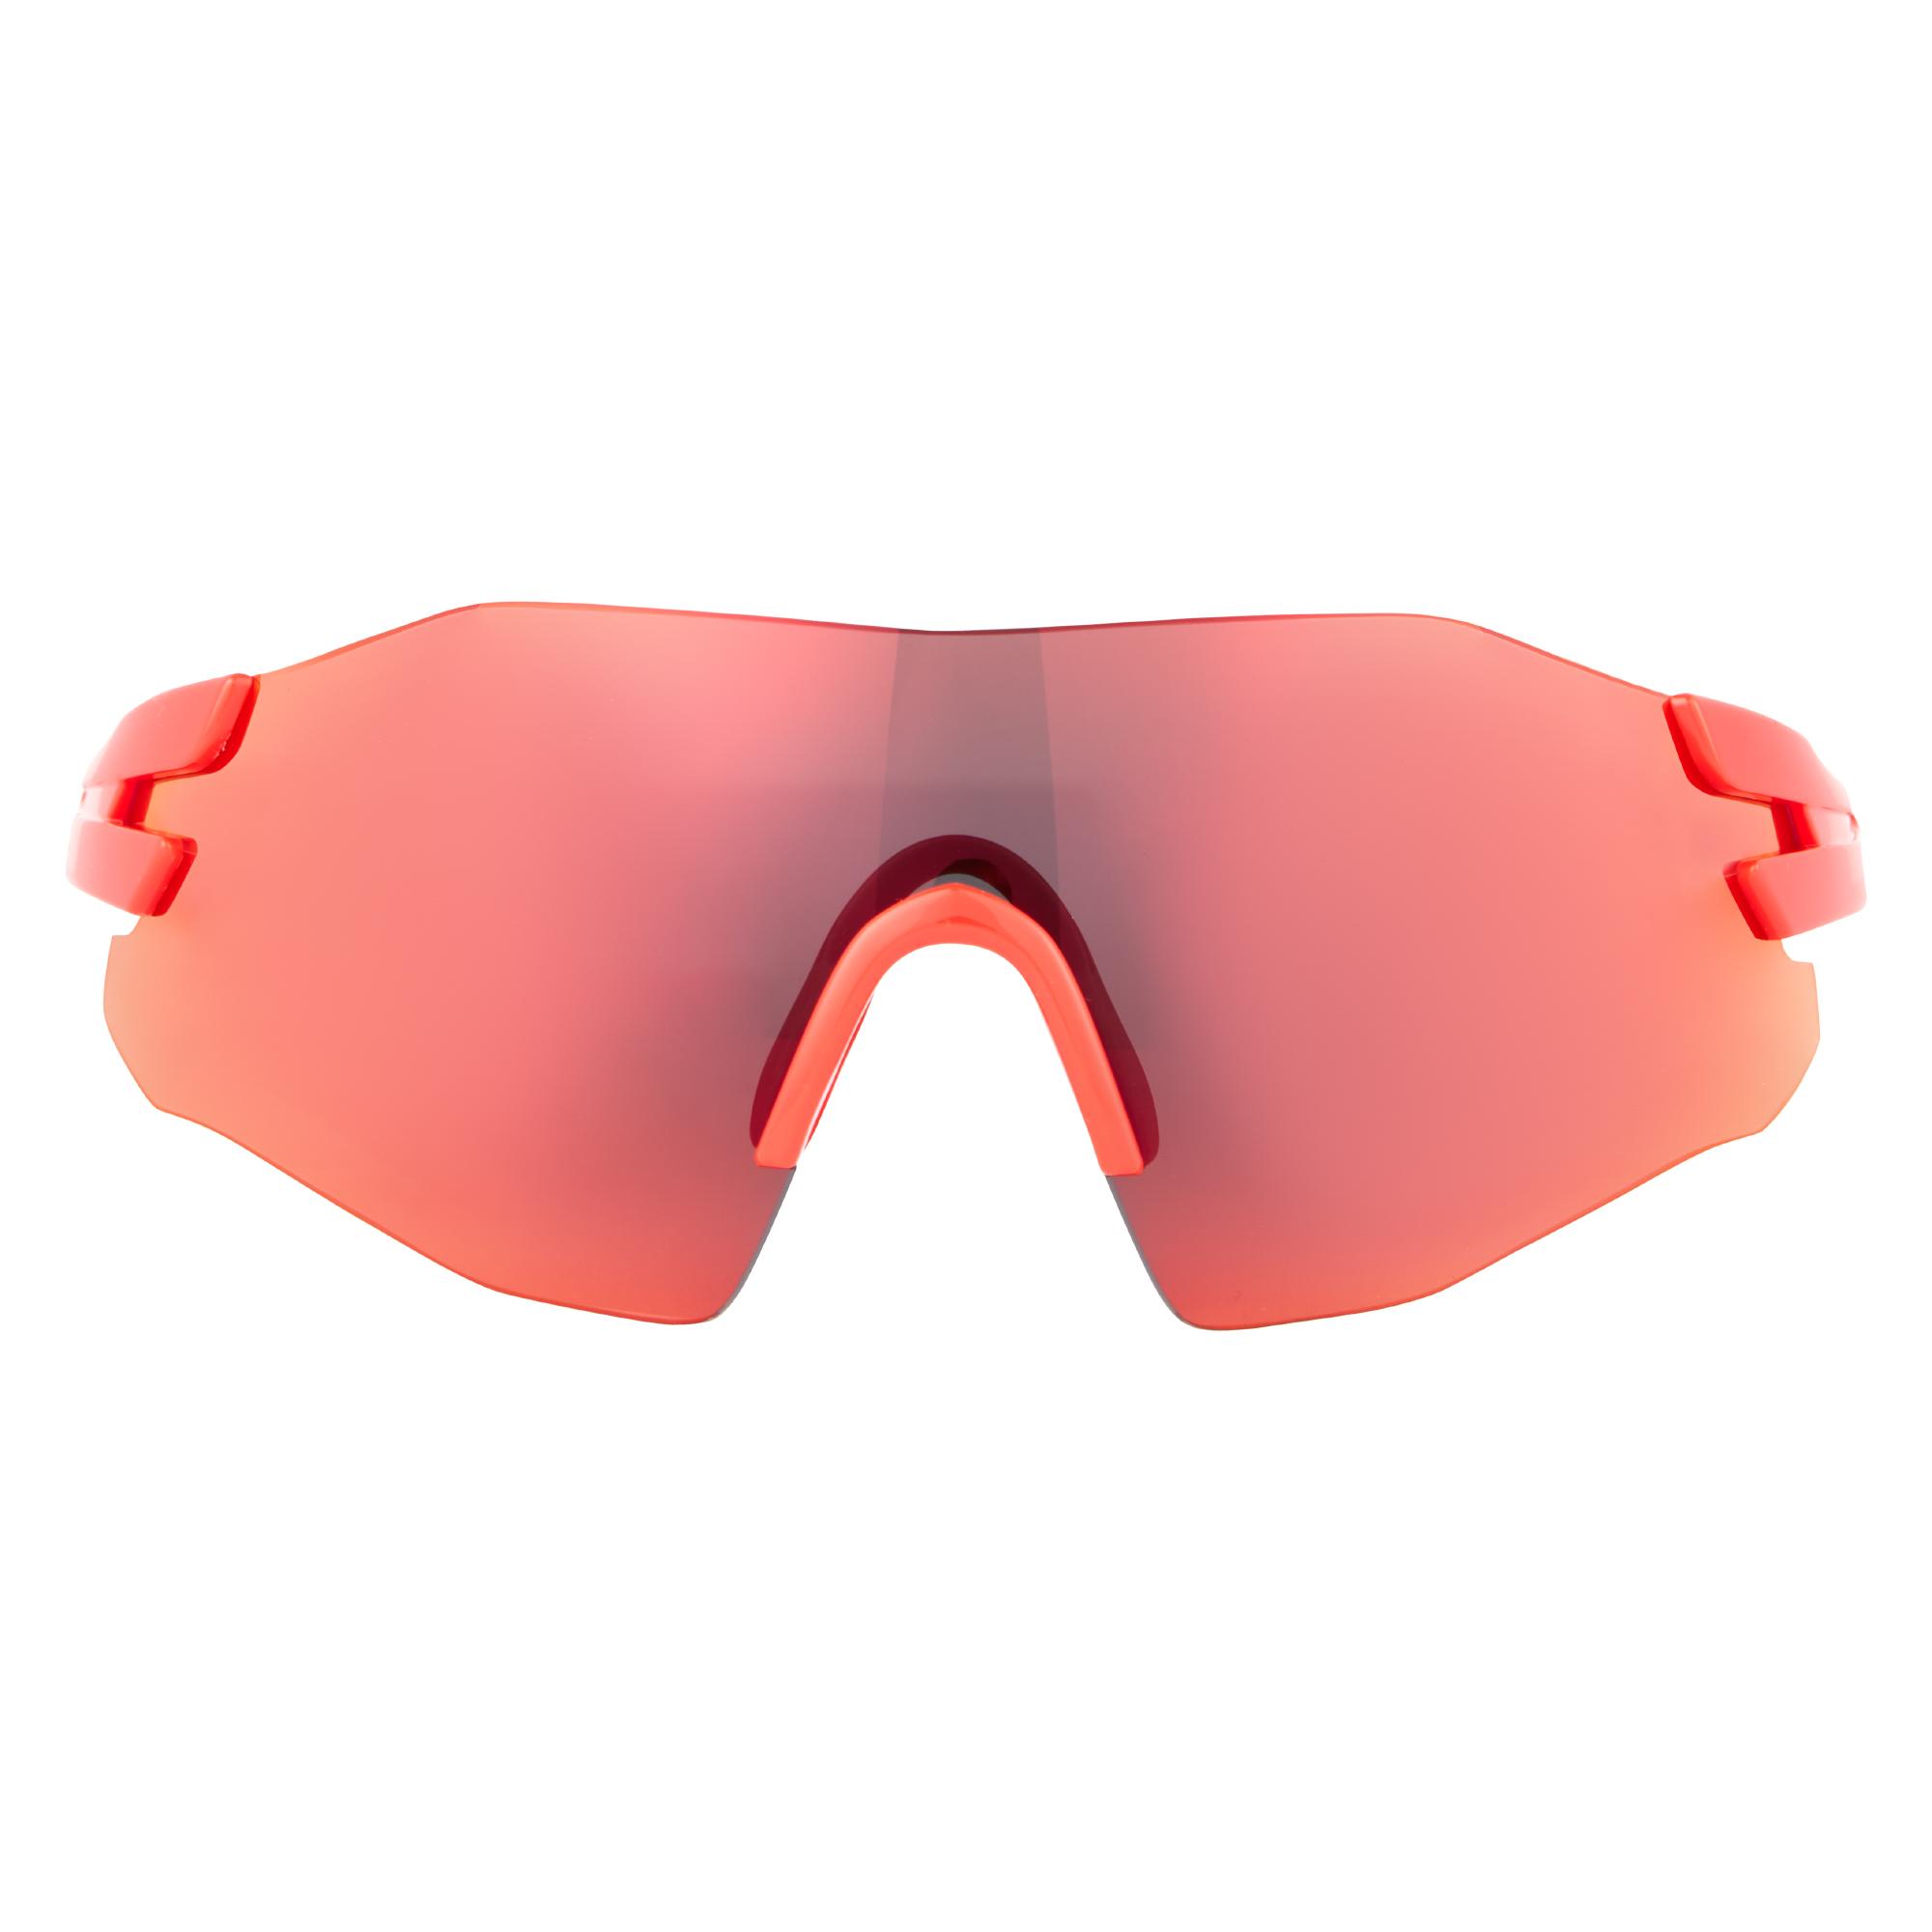 Dhb Aeron Frameless Sunglasses - All Red